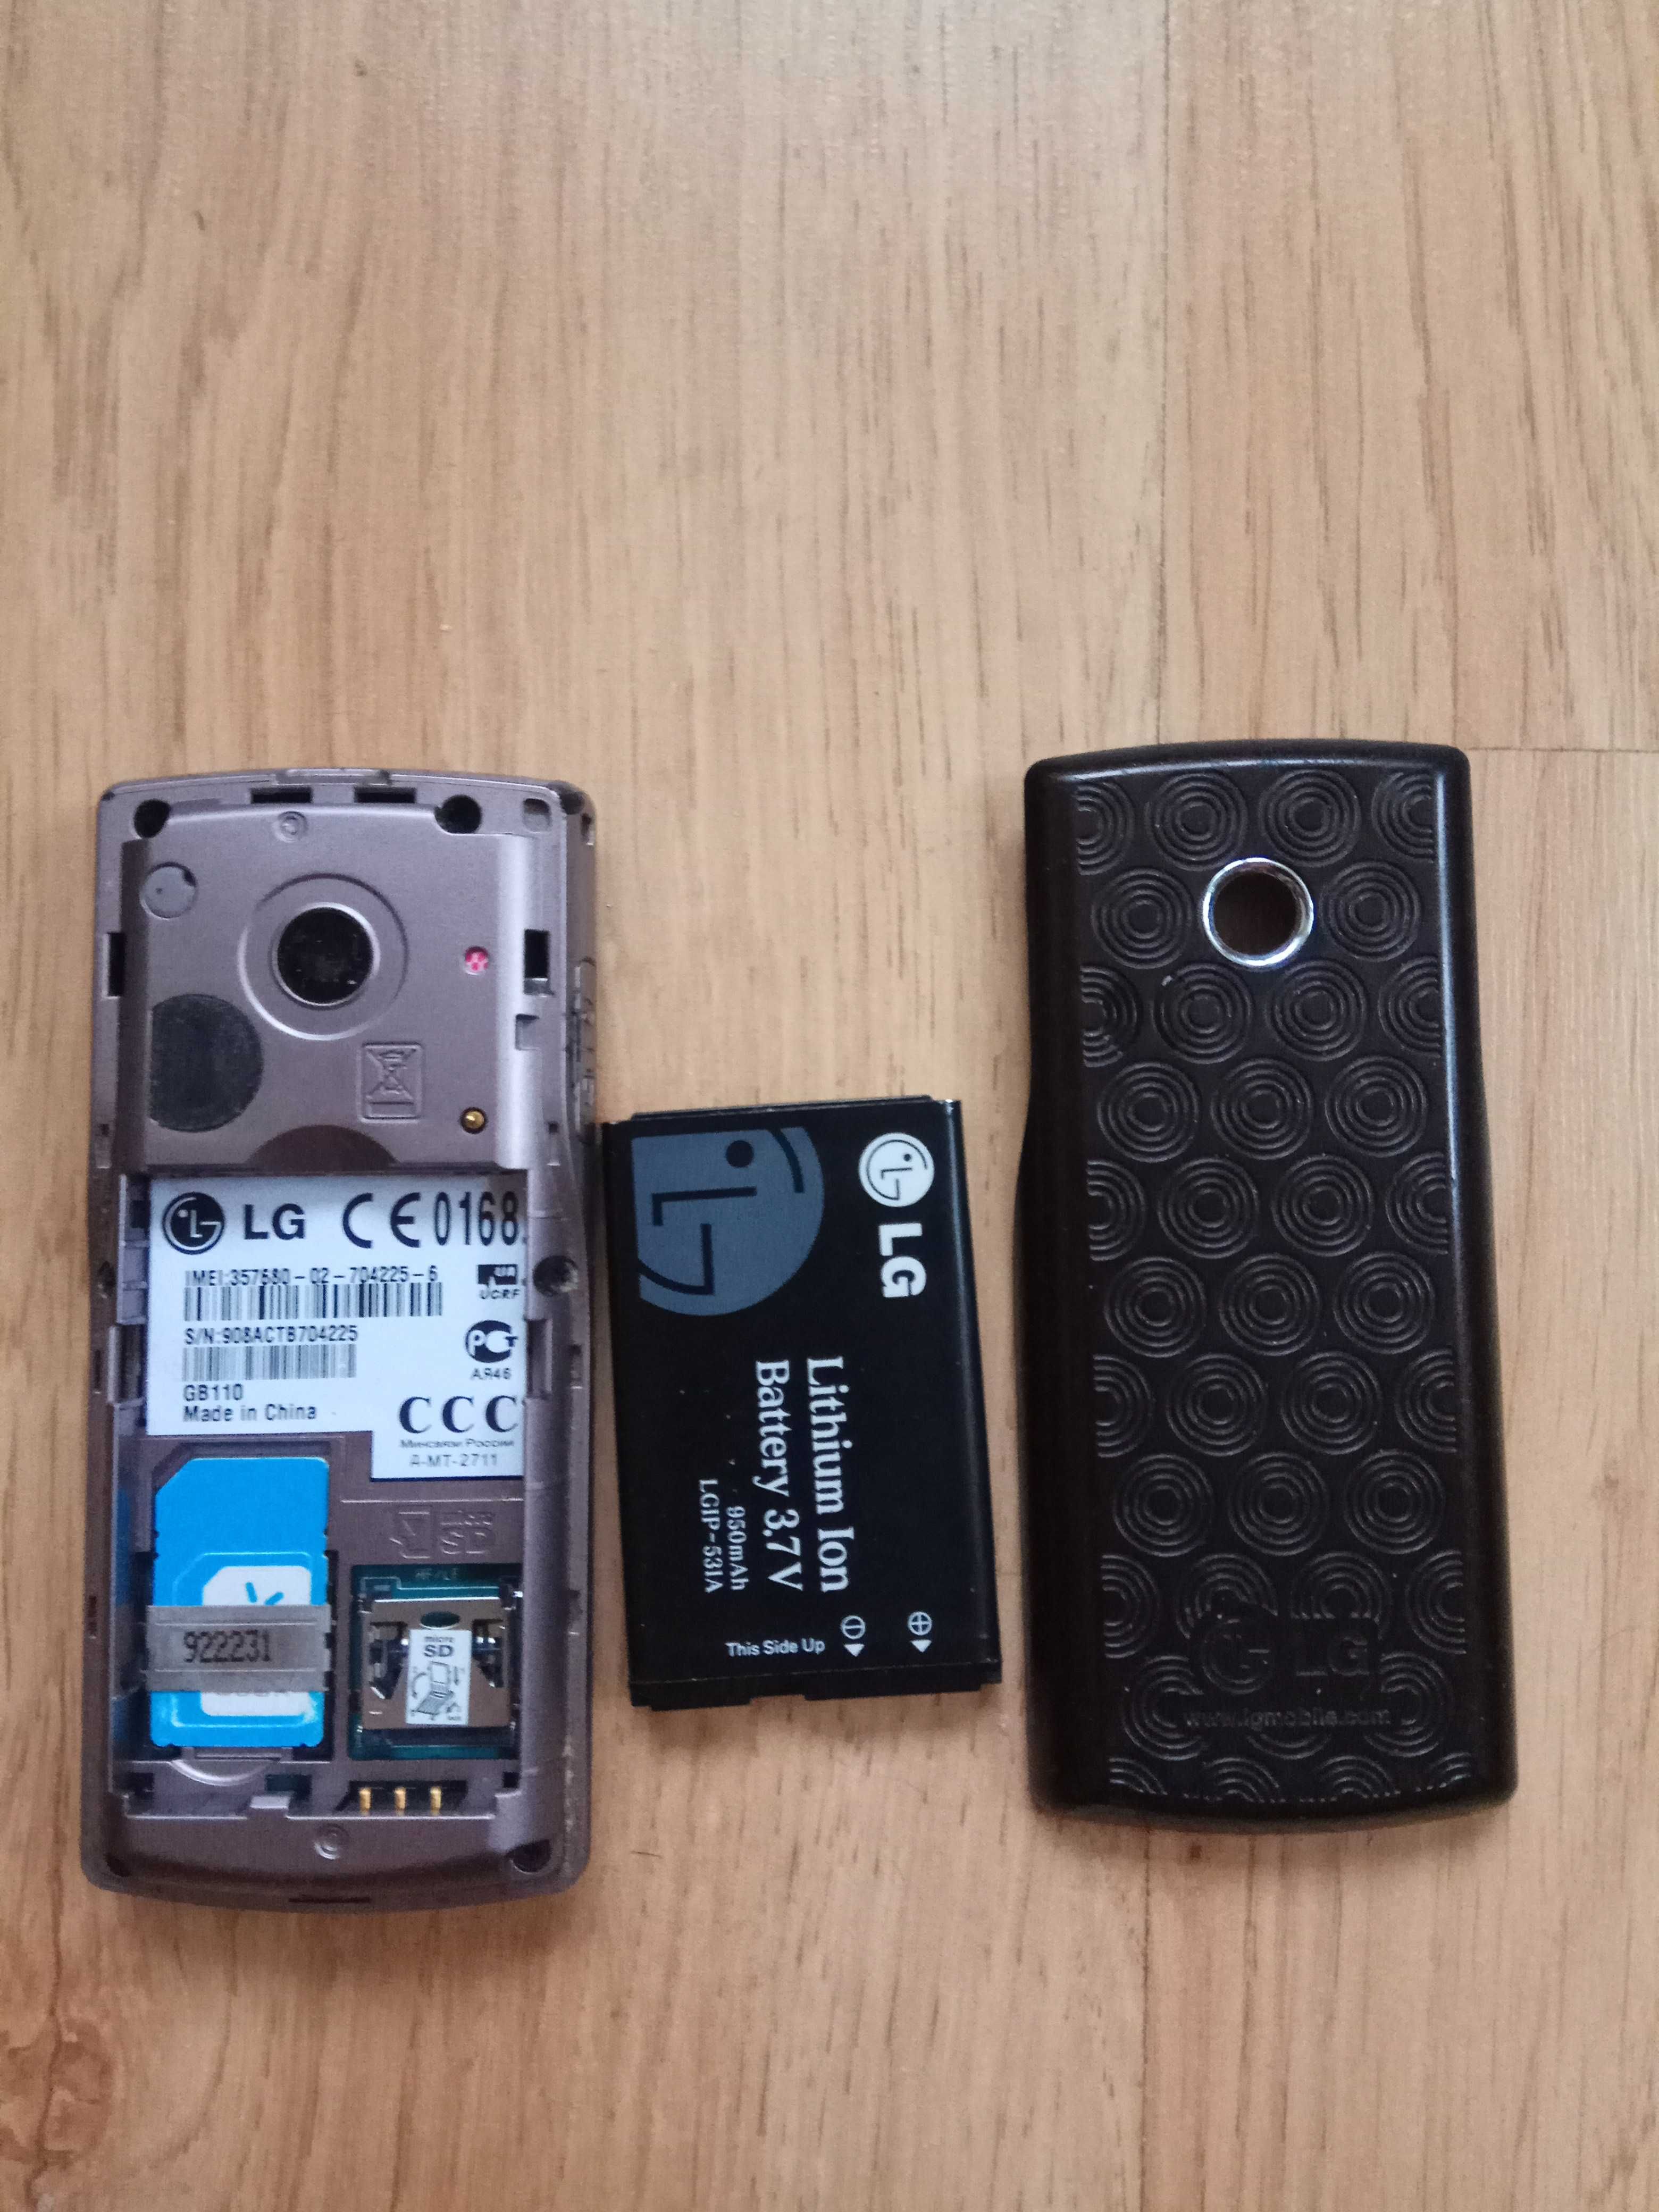 В отл состоянии стильный телефон LG GB110 батарея 5 дней